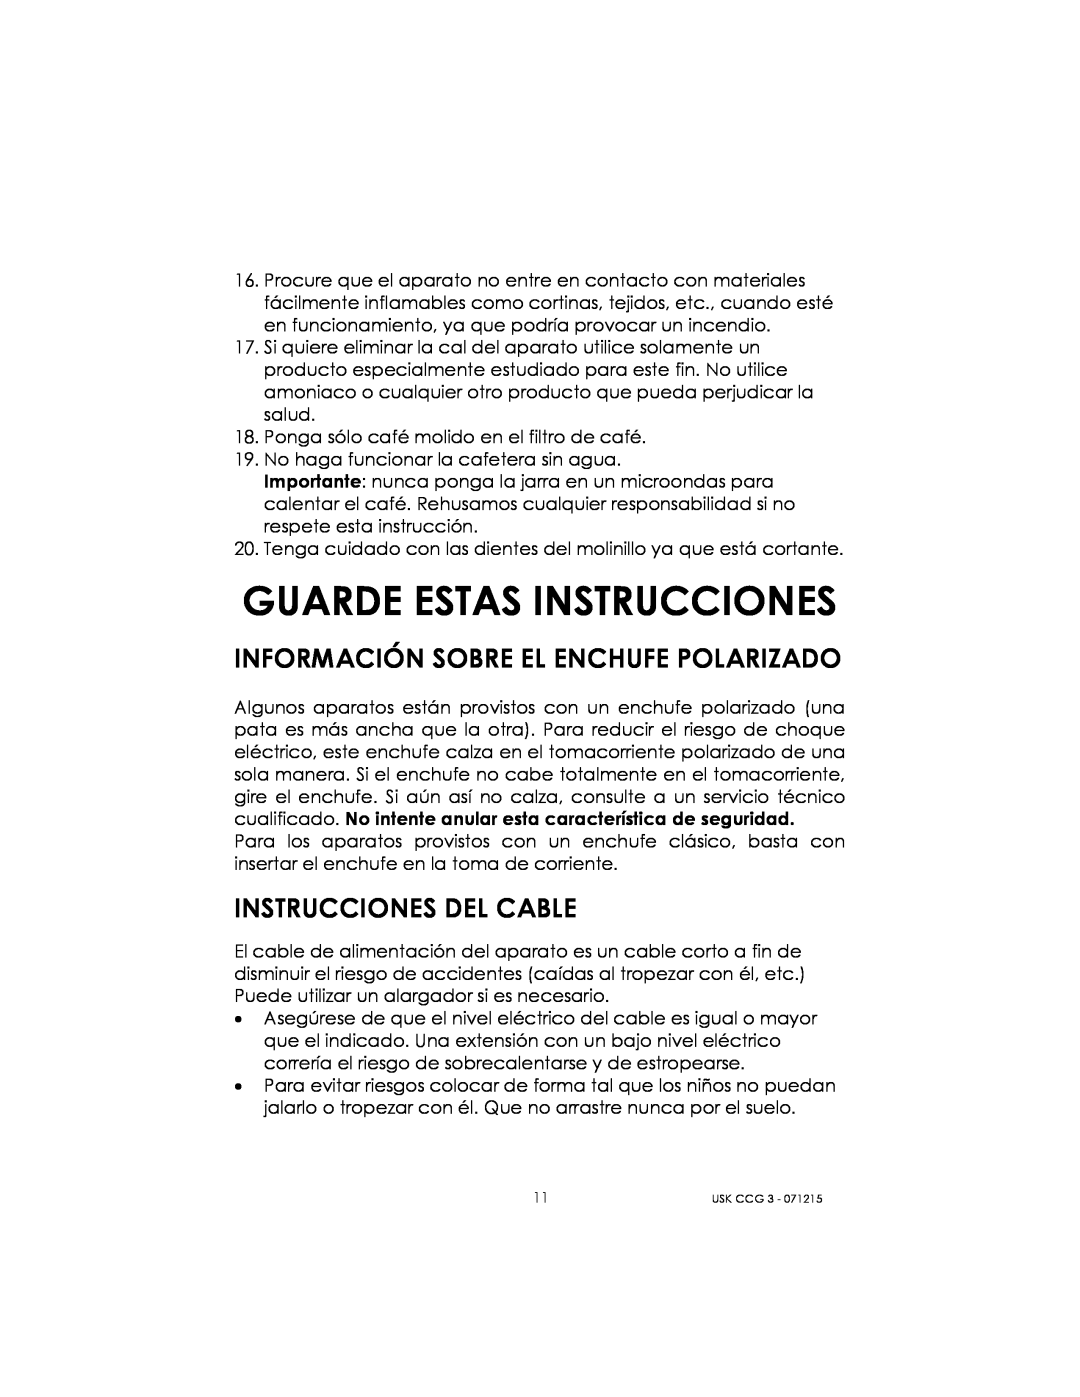 Kalorik USK CCG 3 manual Guarde Estas Instrucciones, Información Sobre El Enchufe Polarizado, Instrucciones Del Cable 